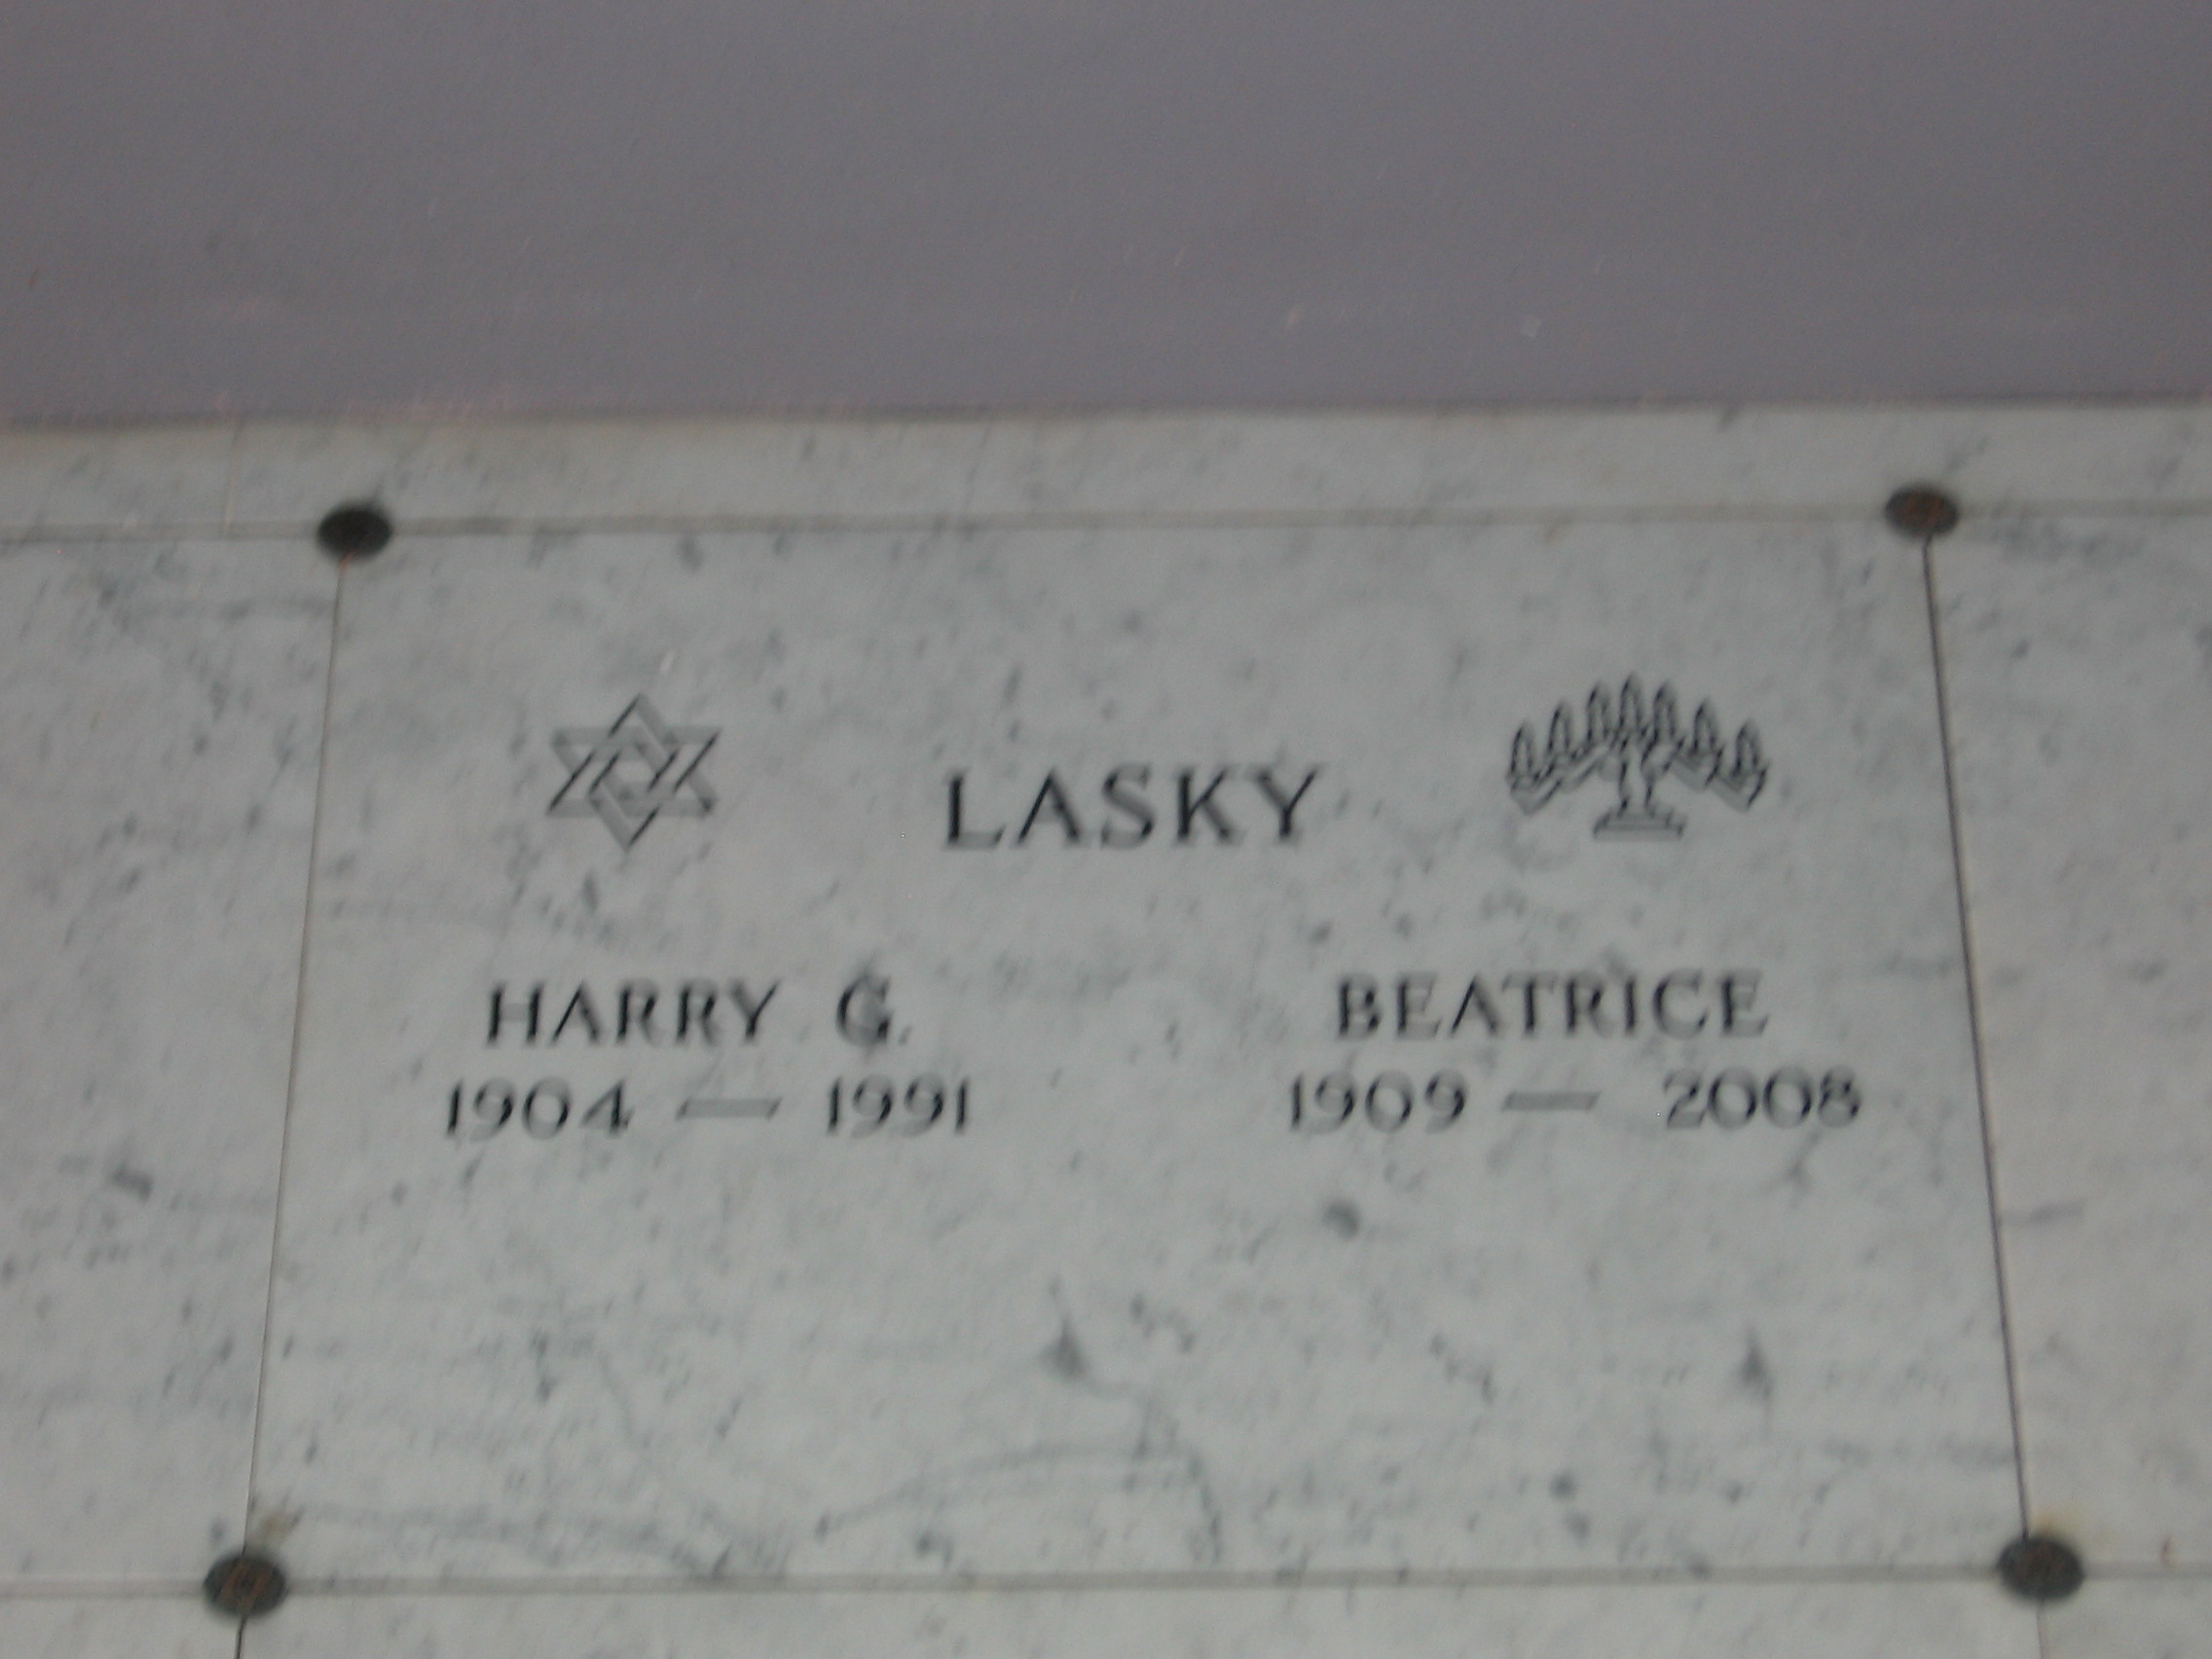 Harry G Lasky